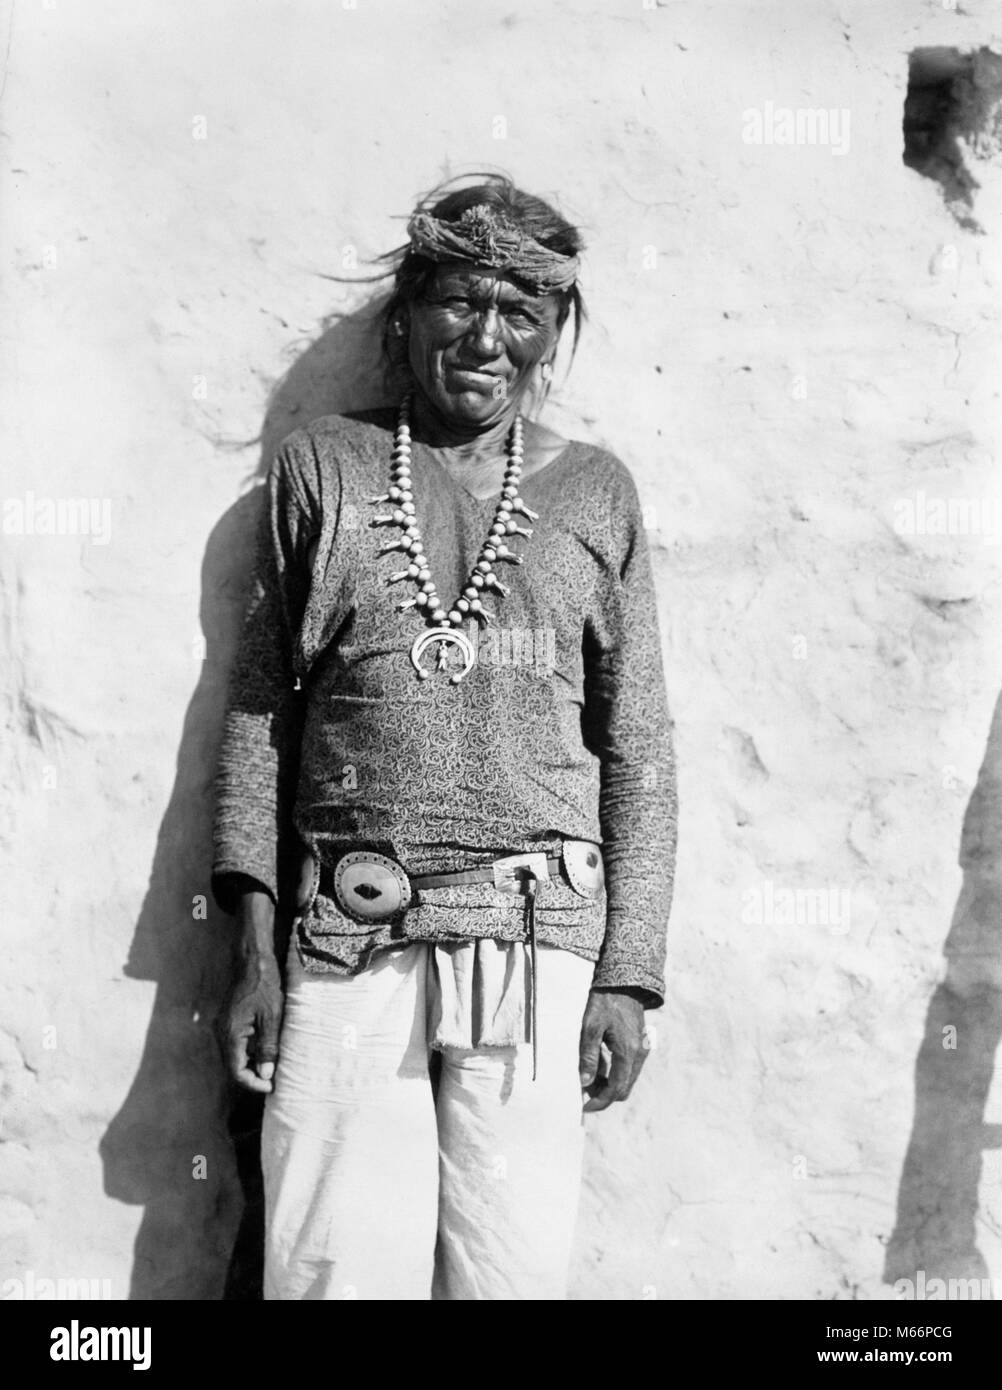 1890 1890 PORTRAIT Native American Indian HOPI WOMAN WEARING SQUASH BLOSSOM NECKLACE LOOKING AT CAMERA - q73422 CPC001 HARS, HOMME D'ÂGE MOYEN CONTACT OCULAIRE 50-55 ans 55-60 ans LE BONHEUR DE L'AMÉRIQUE DU NORD HISTORIQUE BLOSSOM LOUCHER 1890 Joyeux SOURIRES NATIVE AMERICAN 1890 HOMMES AMÉRICAINS AUTOCHTONES B&W NOIR ET BLANC LES HOPI LOOKING AT CAMERA OLD FASHIONED PERSONNES SQUASH BLOSSOM Banque D'Images